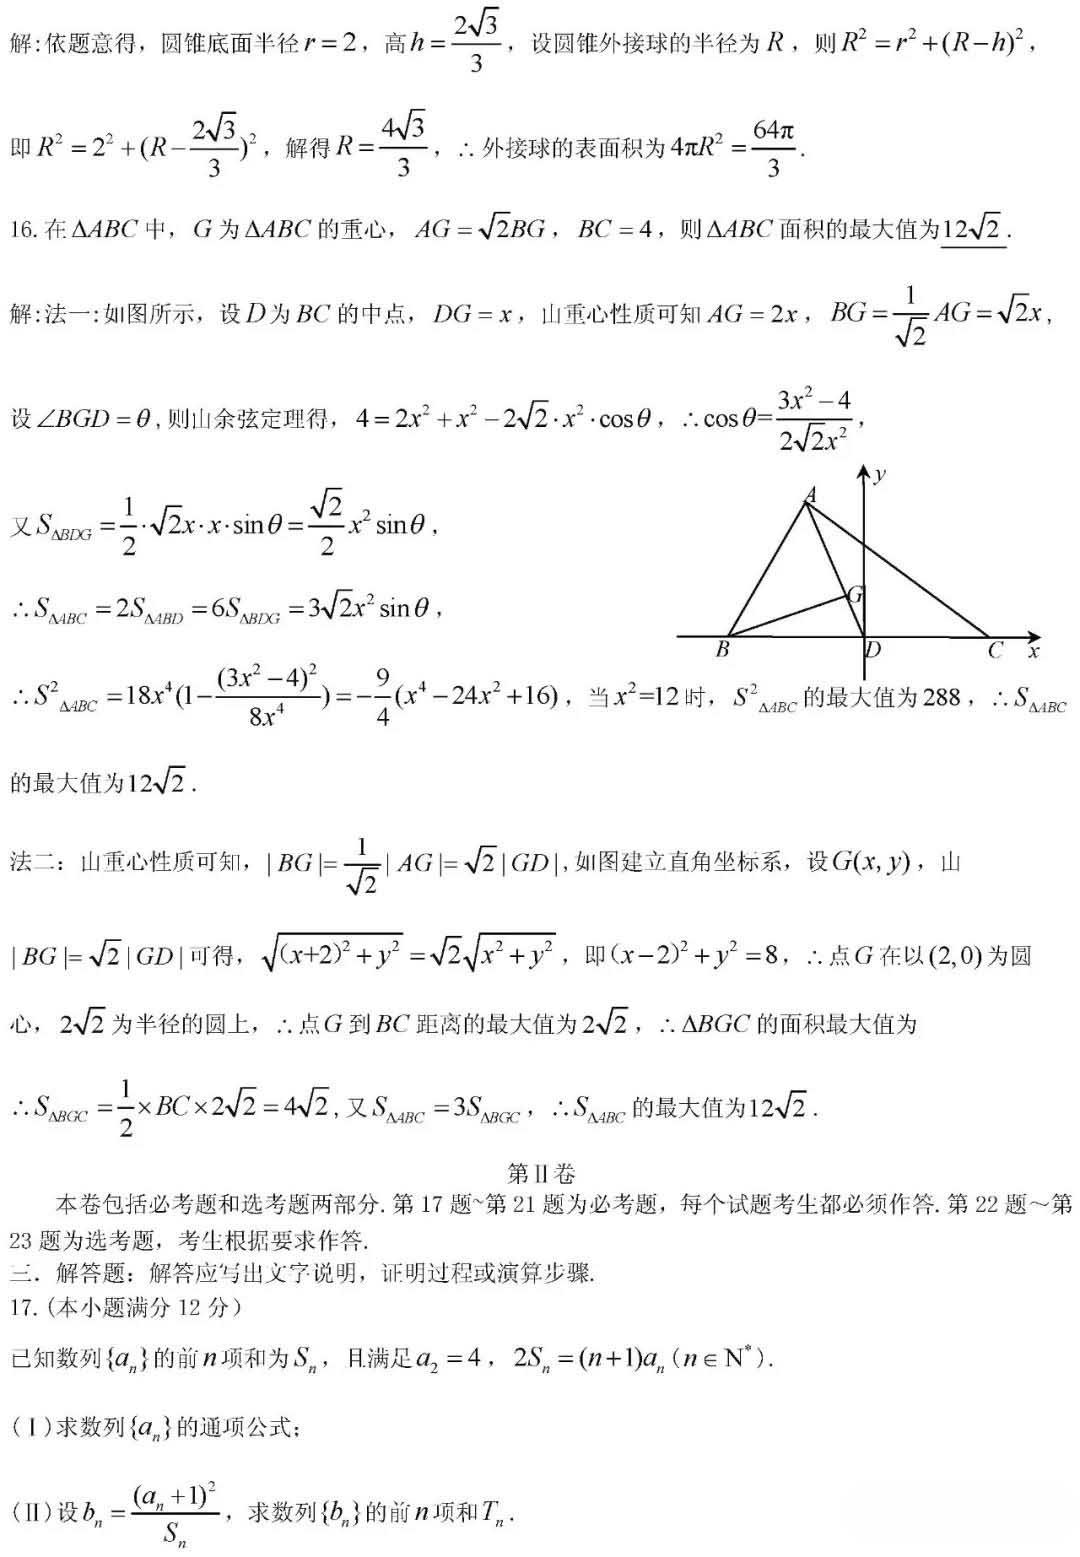 江西省九江市2019高三第三次高考模拟考试理科数学试题与答案公布!